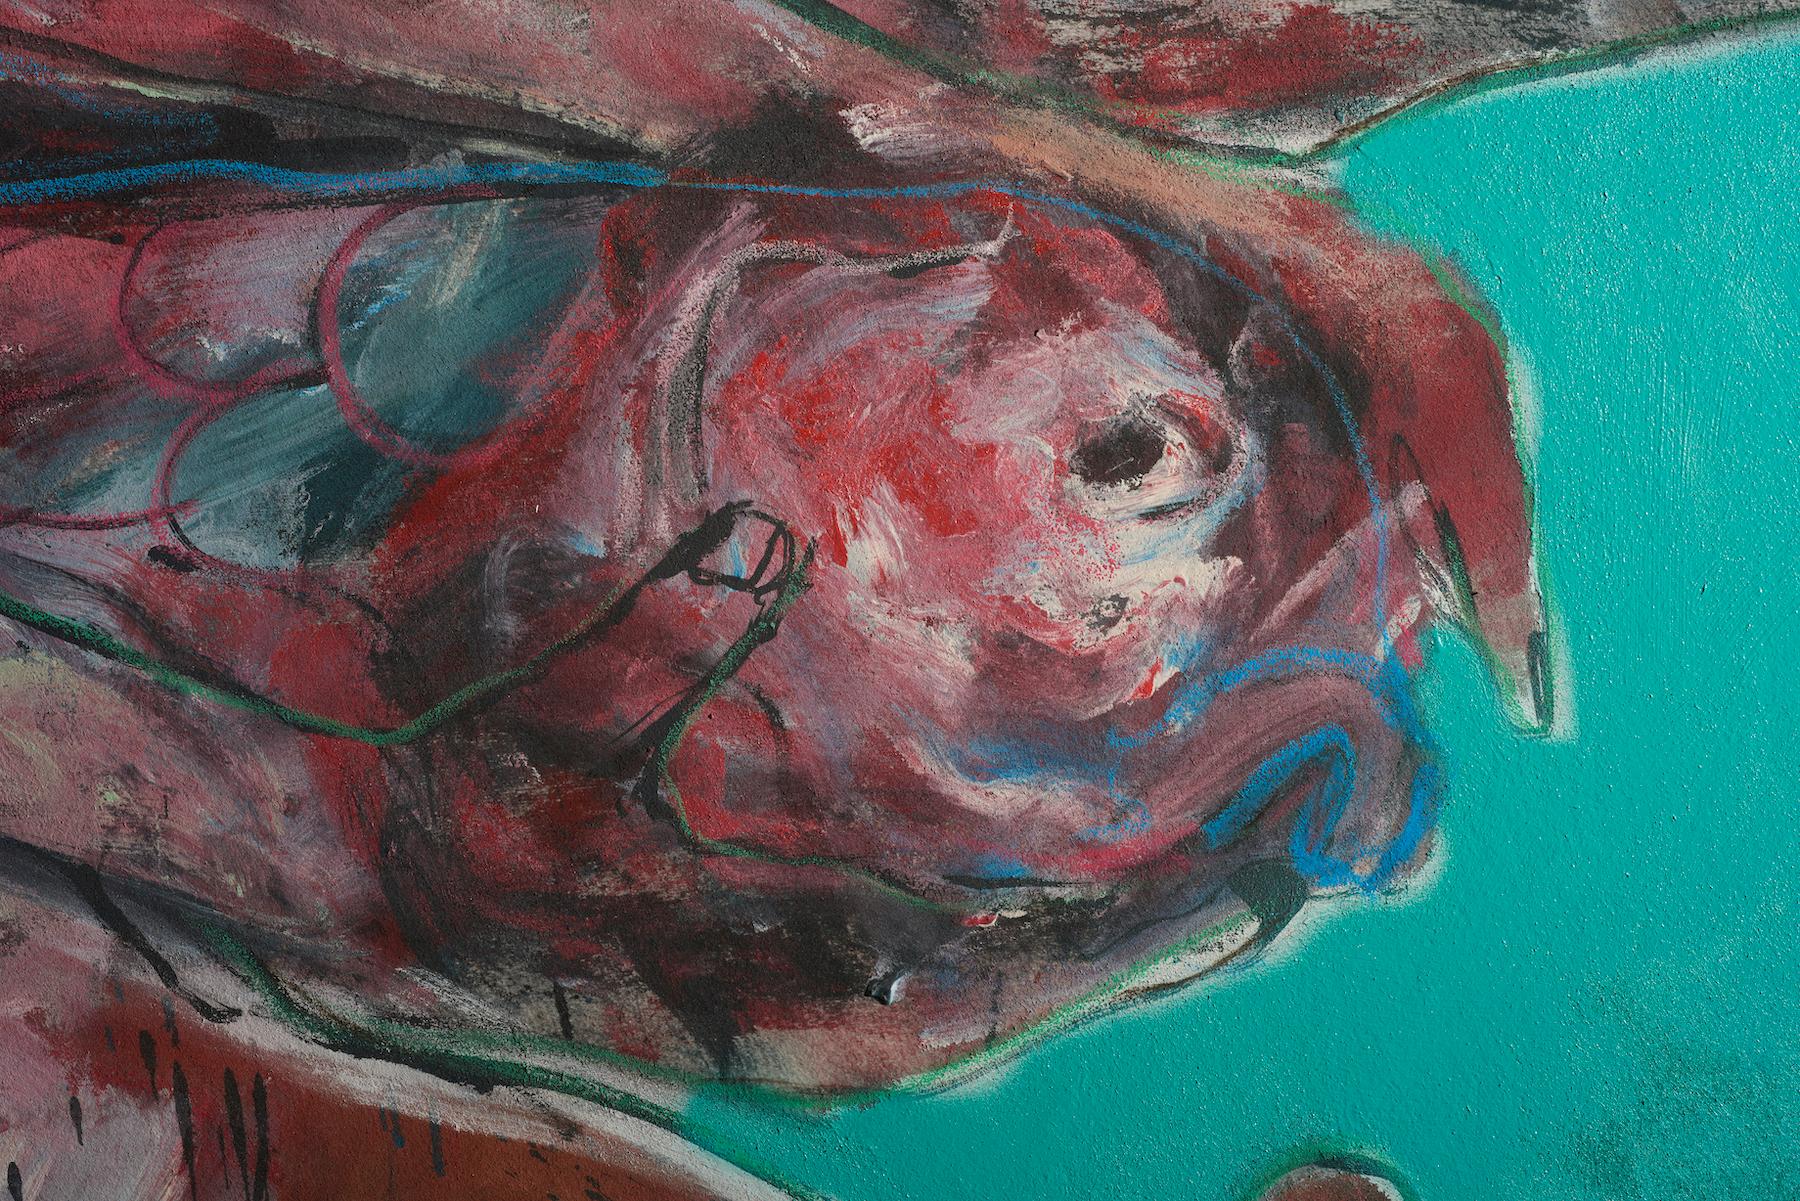 Francky Criquet  (19 septembre 1968 à La Flèche, La Sarthe, France)

Fertilité,  2010

*Mélange de pigments liquides et en poudre sur le tissu

110 X 163 cm

La scène se déroule dans l'eau émeraude.
Une jeune femme et un poisson sont représentés